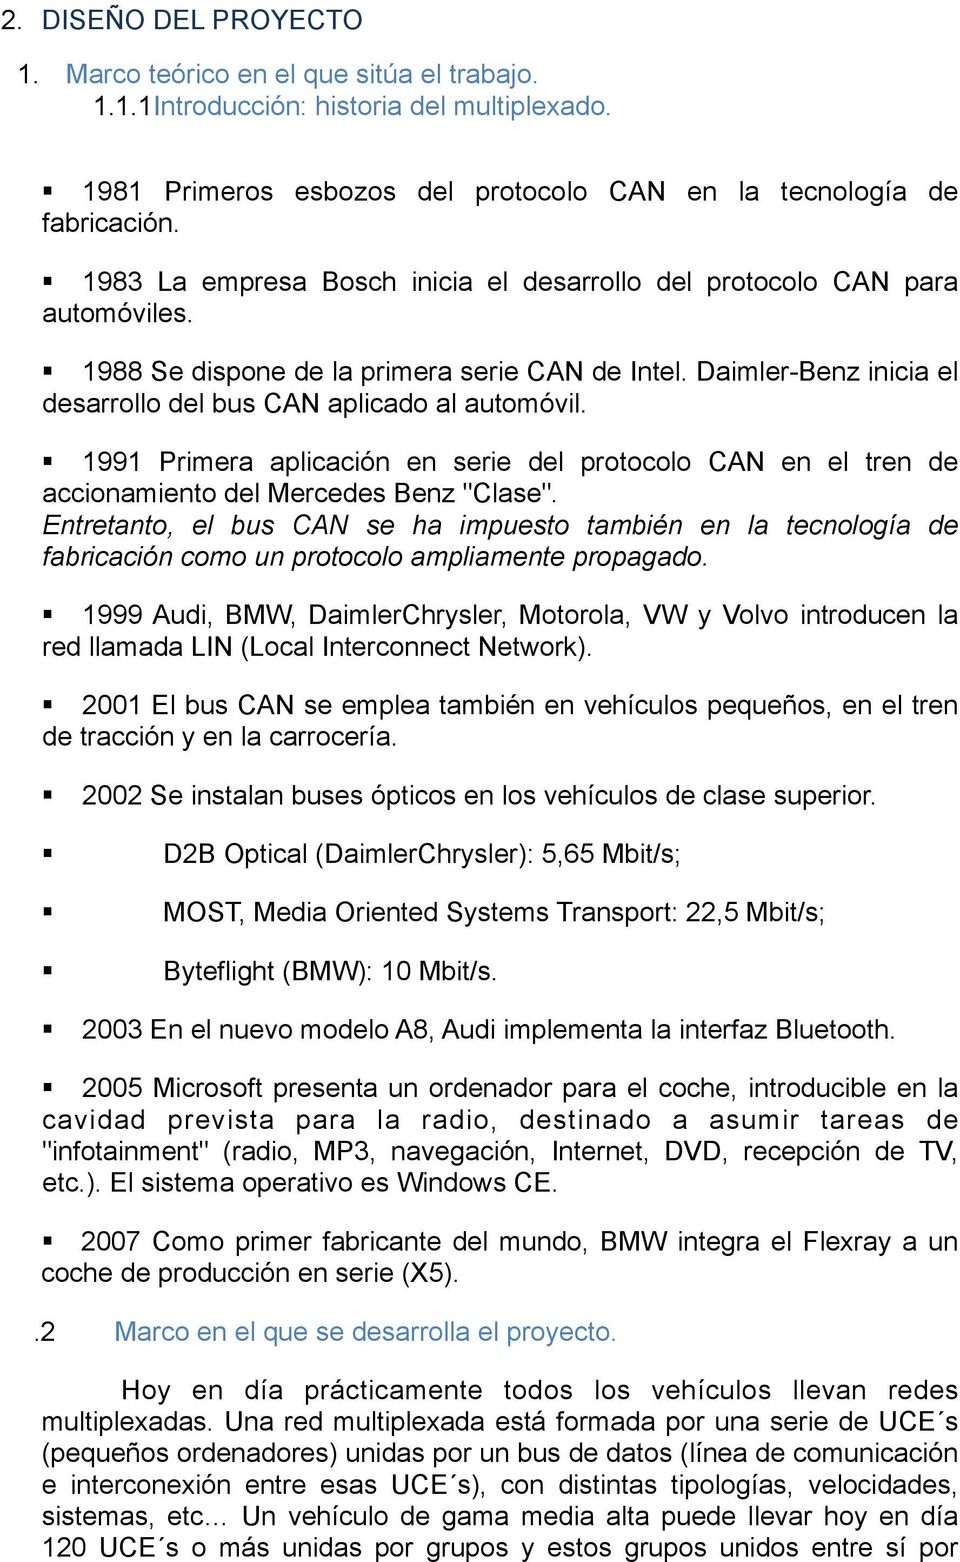 1991 Primera aplicación en serie del protocolo CAN en el tren de accionamiento del Mercedes Benz "Clase".